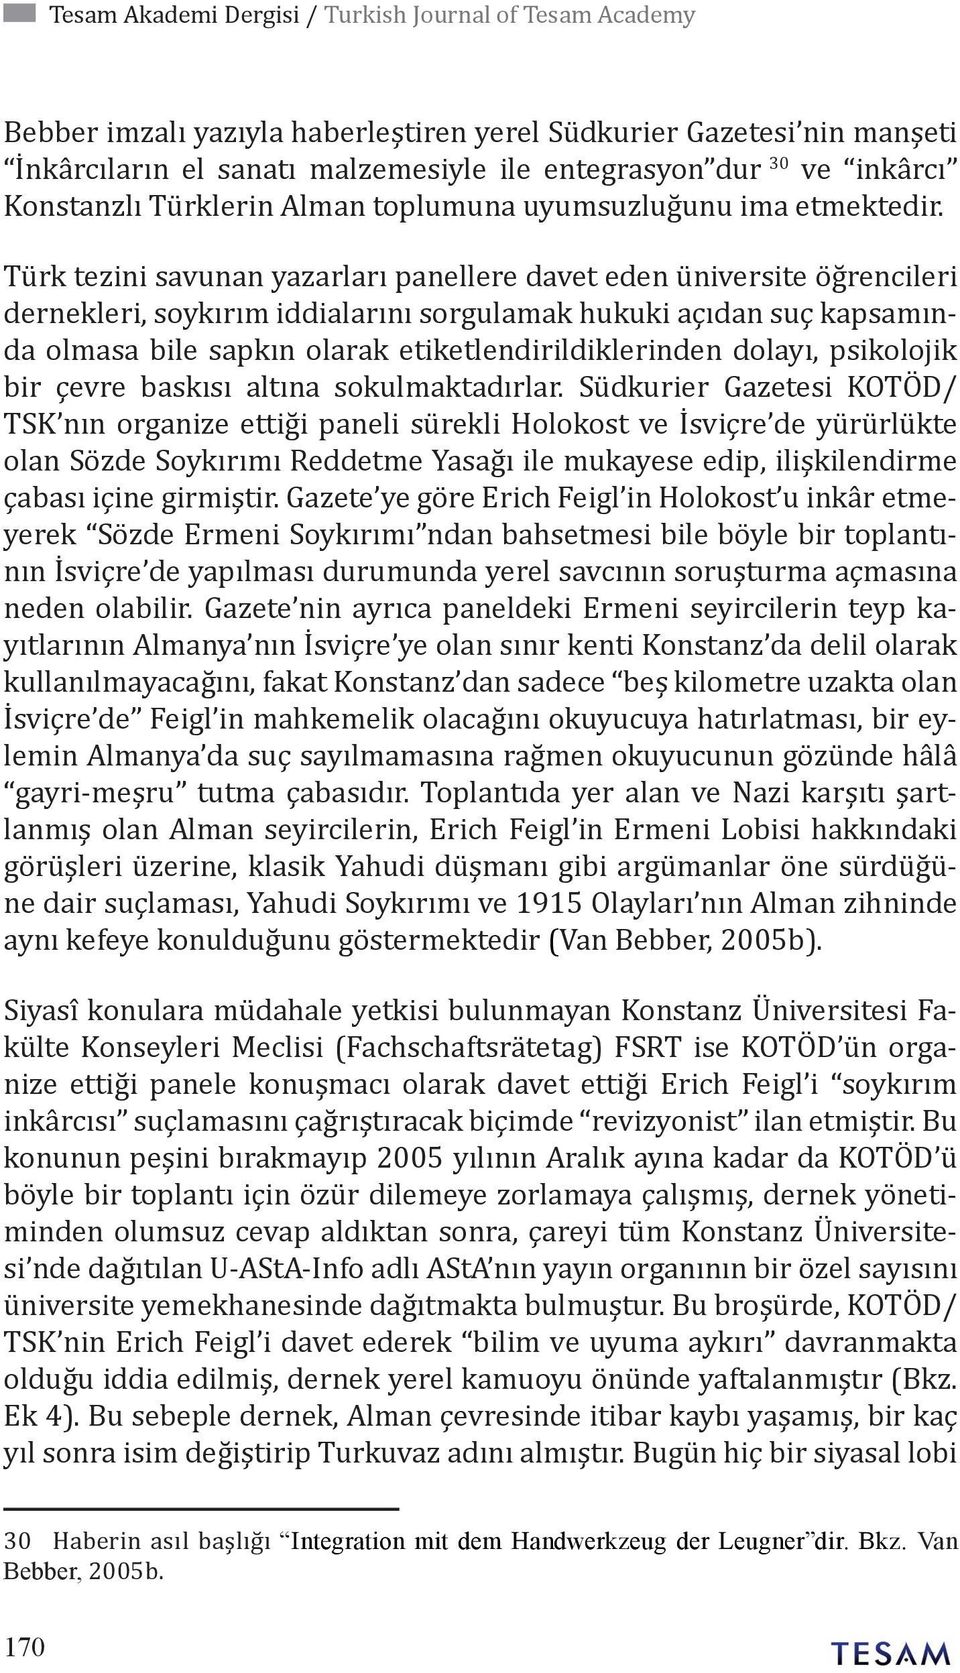 Türk tezini savunan yazarları panellere davet eden üniversite öğrencileri dernekleri, soykırım iddialarını sorgulamak hukuki açıdan suç kapsamında olmasa bile sapkın olarak etiketlendirildiklerinden